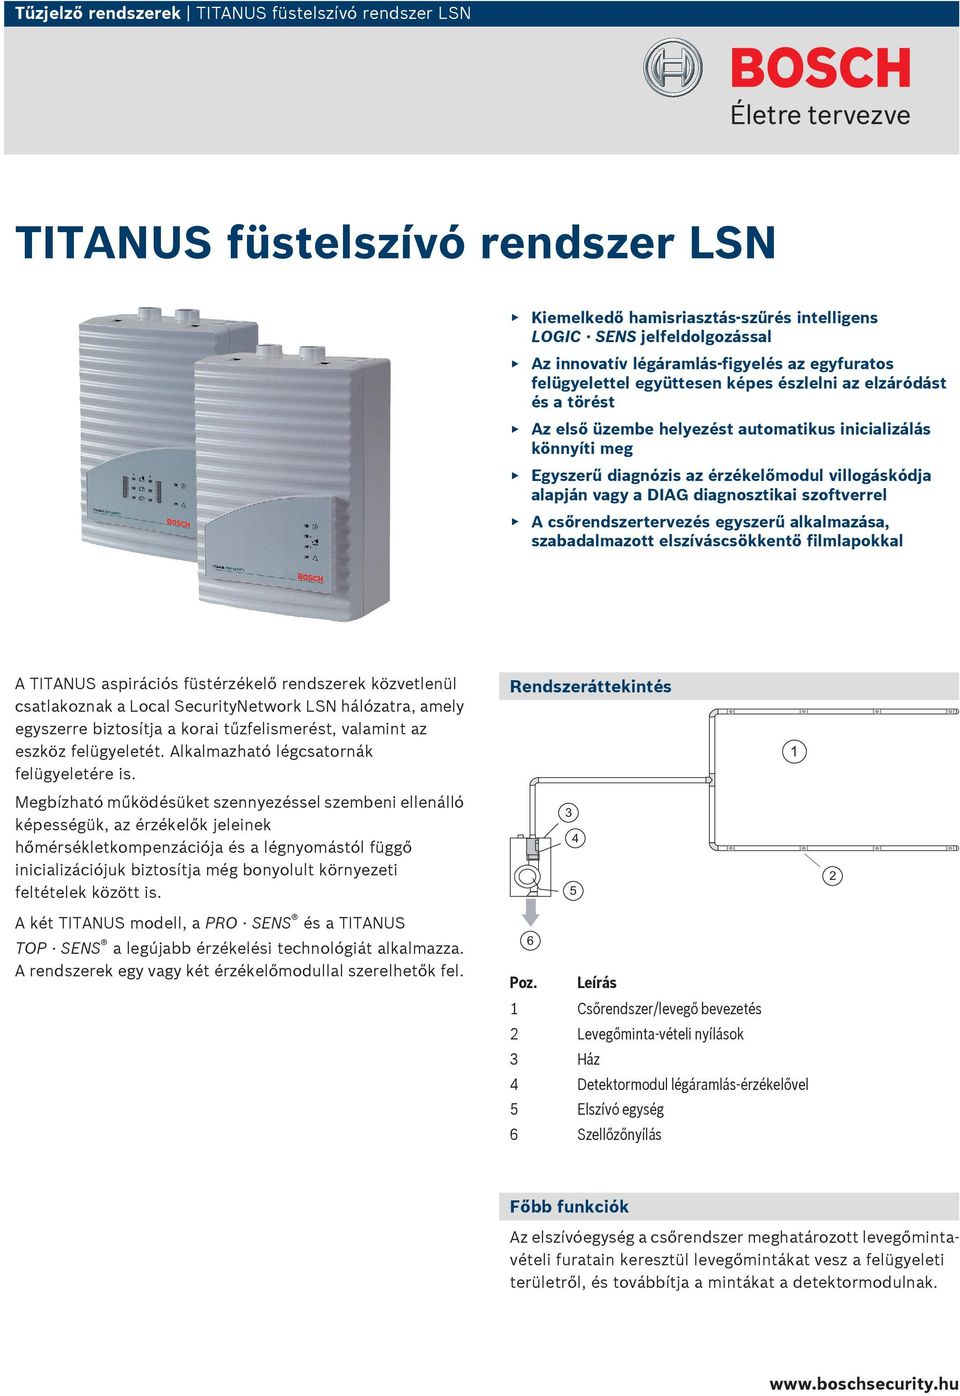 szoftverrel A csőtervezés egyszerű alkalmazása, szabadalmazott elszíváscsökkentő kal A TITANUS aspirációs füstérzékelő ek közvetlenül csatlakoznak a Local SecurityNetwork LSN hálózatra, amely